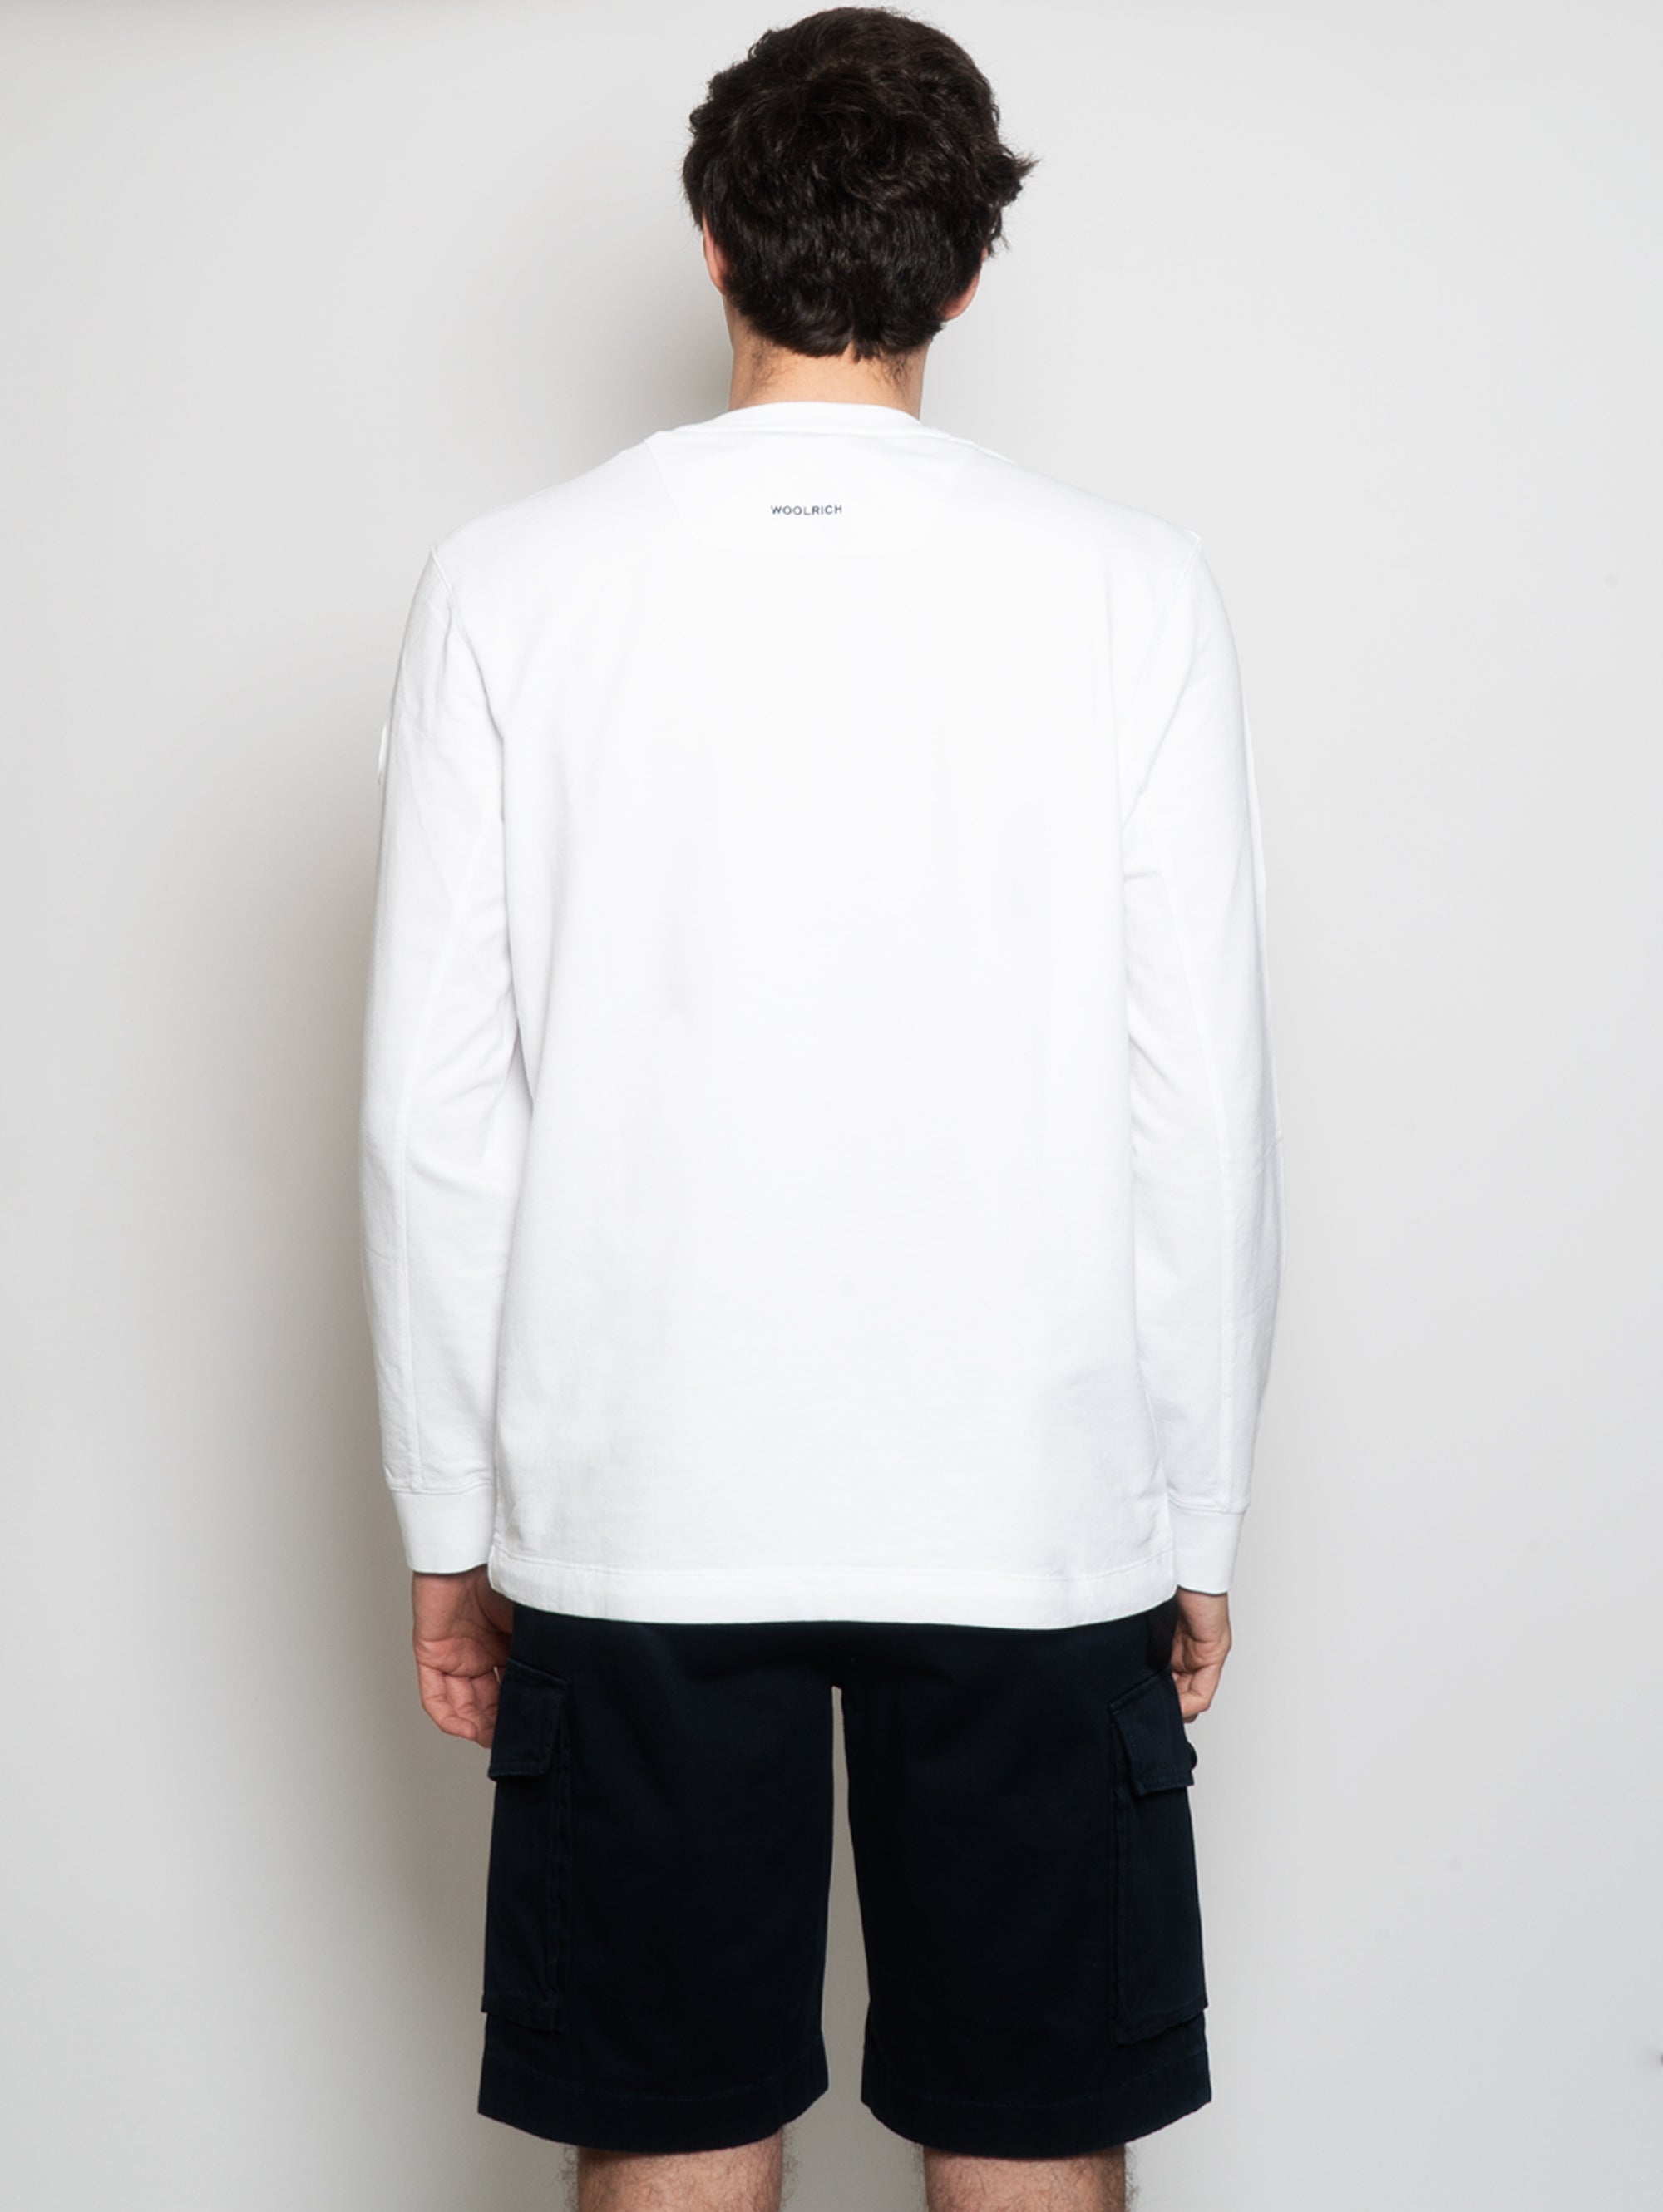 Rundhals-Sweatshirt mit aufgesetzter weißer Tasche